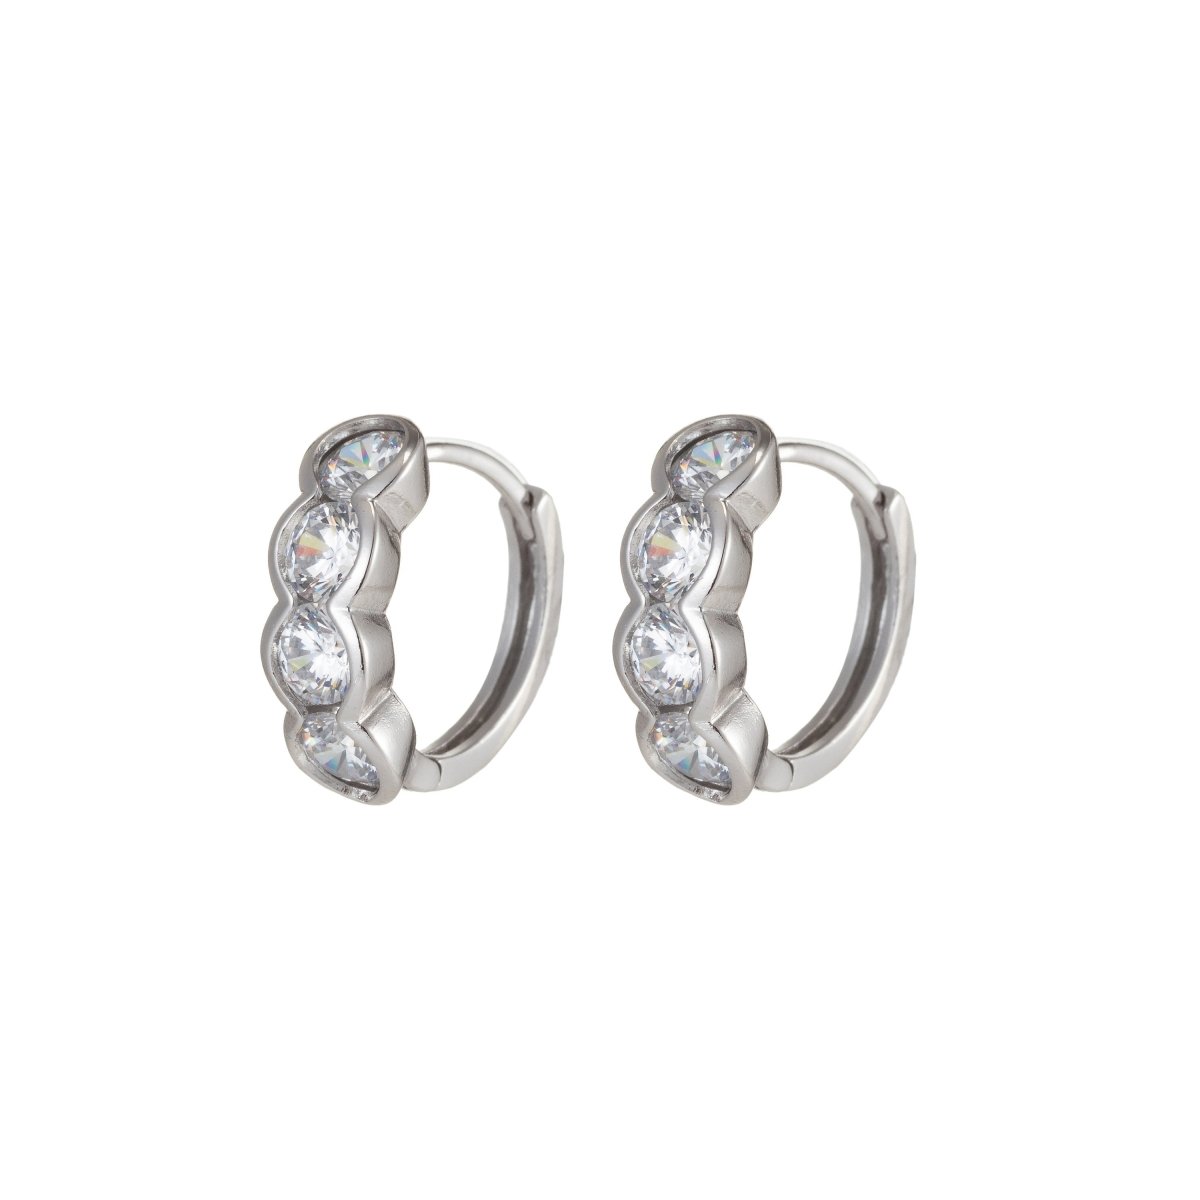 Four Diamond earrings Silver earrings hoops Dainty Earring for everyday earring Huggie Earring Q-042 - DLUXCA